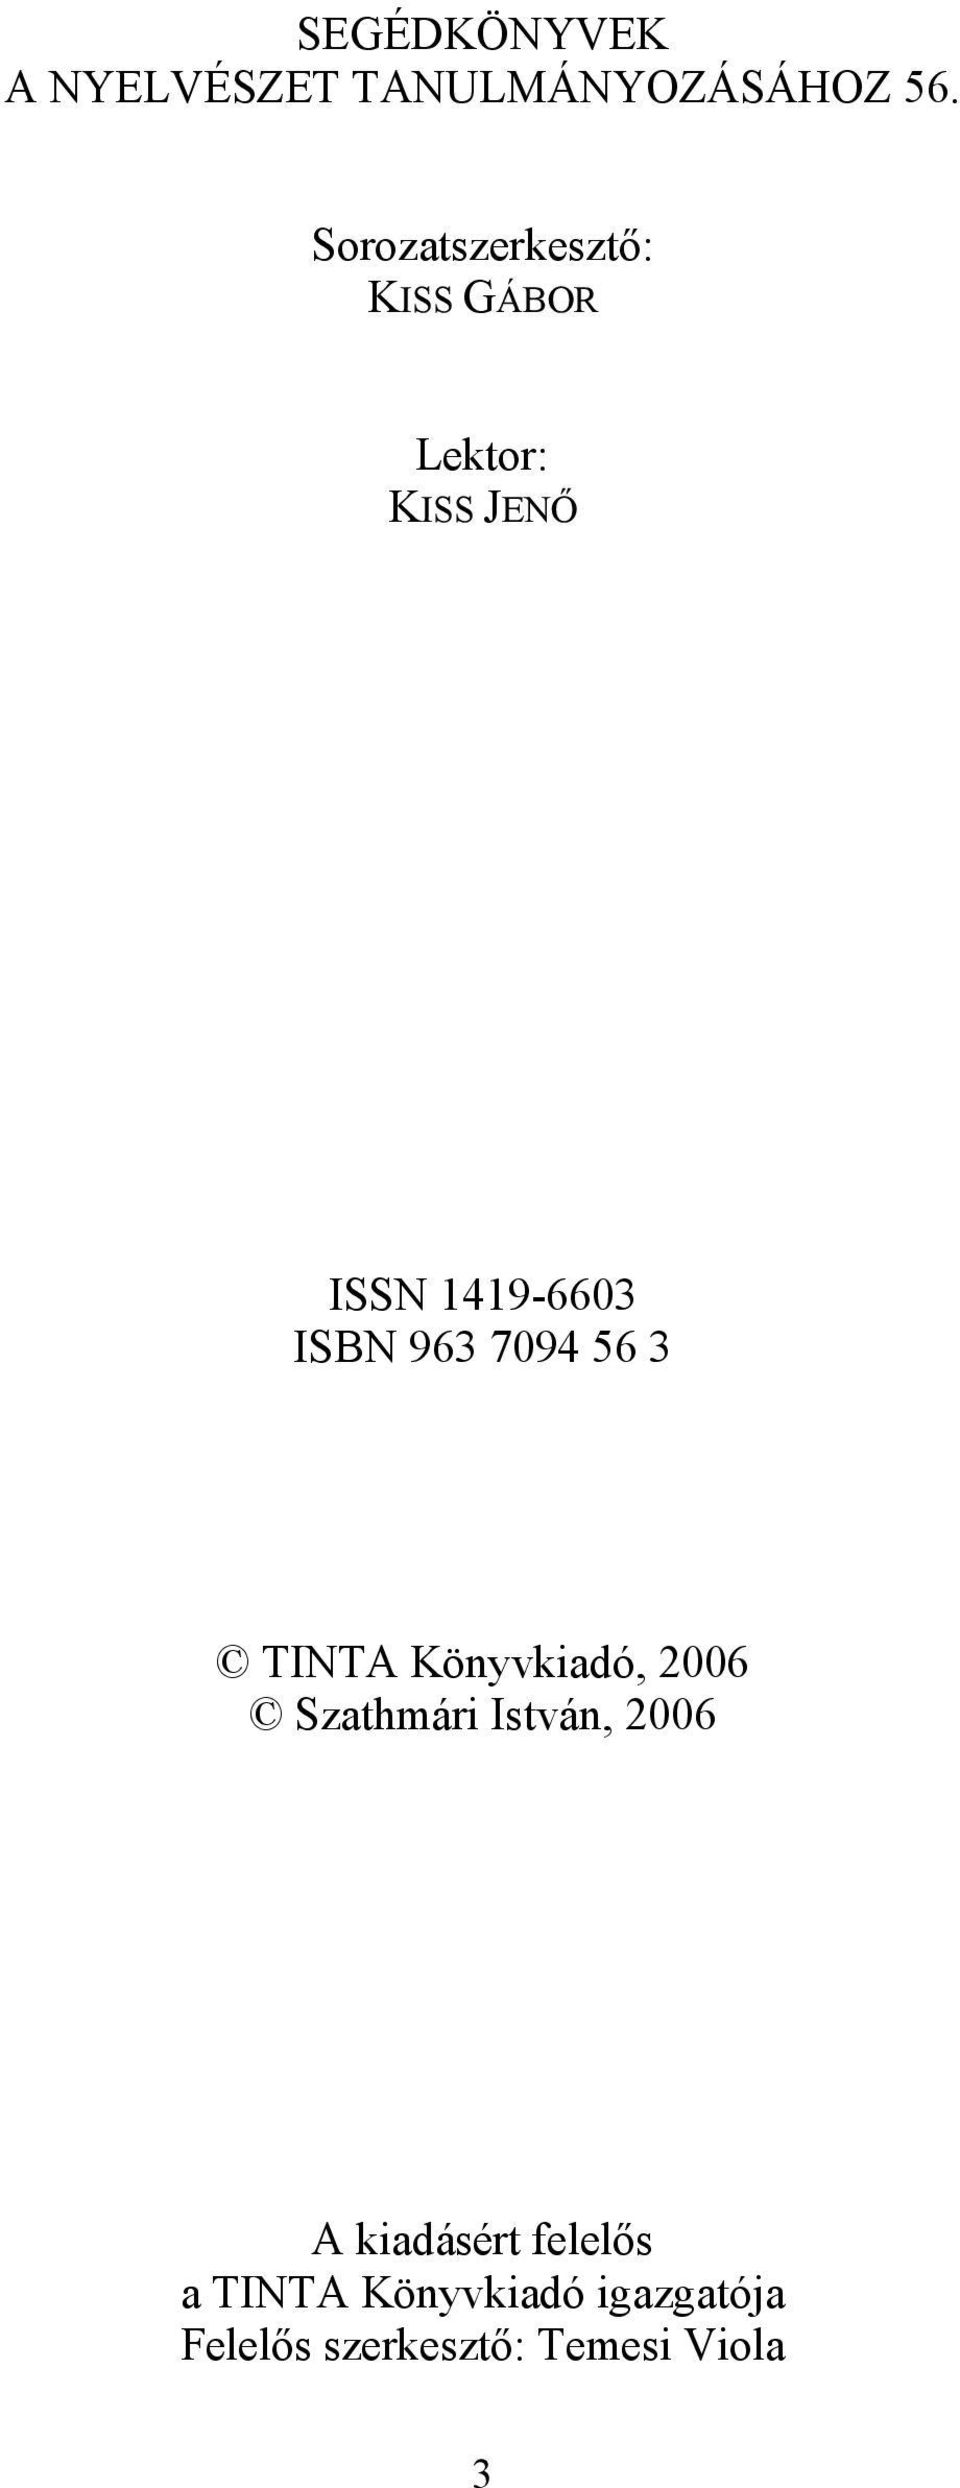 ISBN 963 7094 56 3 TINTA Könyvkiadó, 2006 Szathmári István, 2006